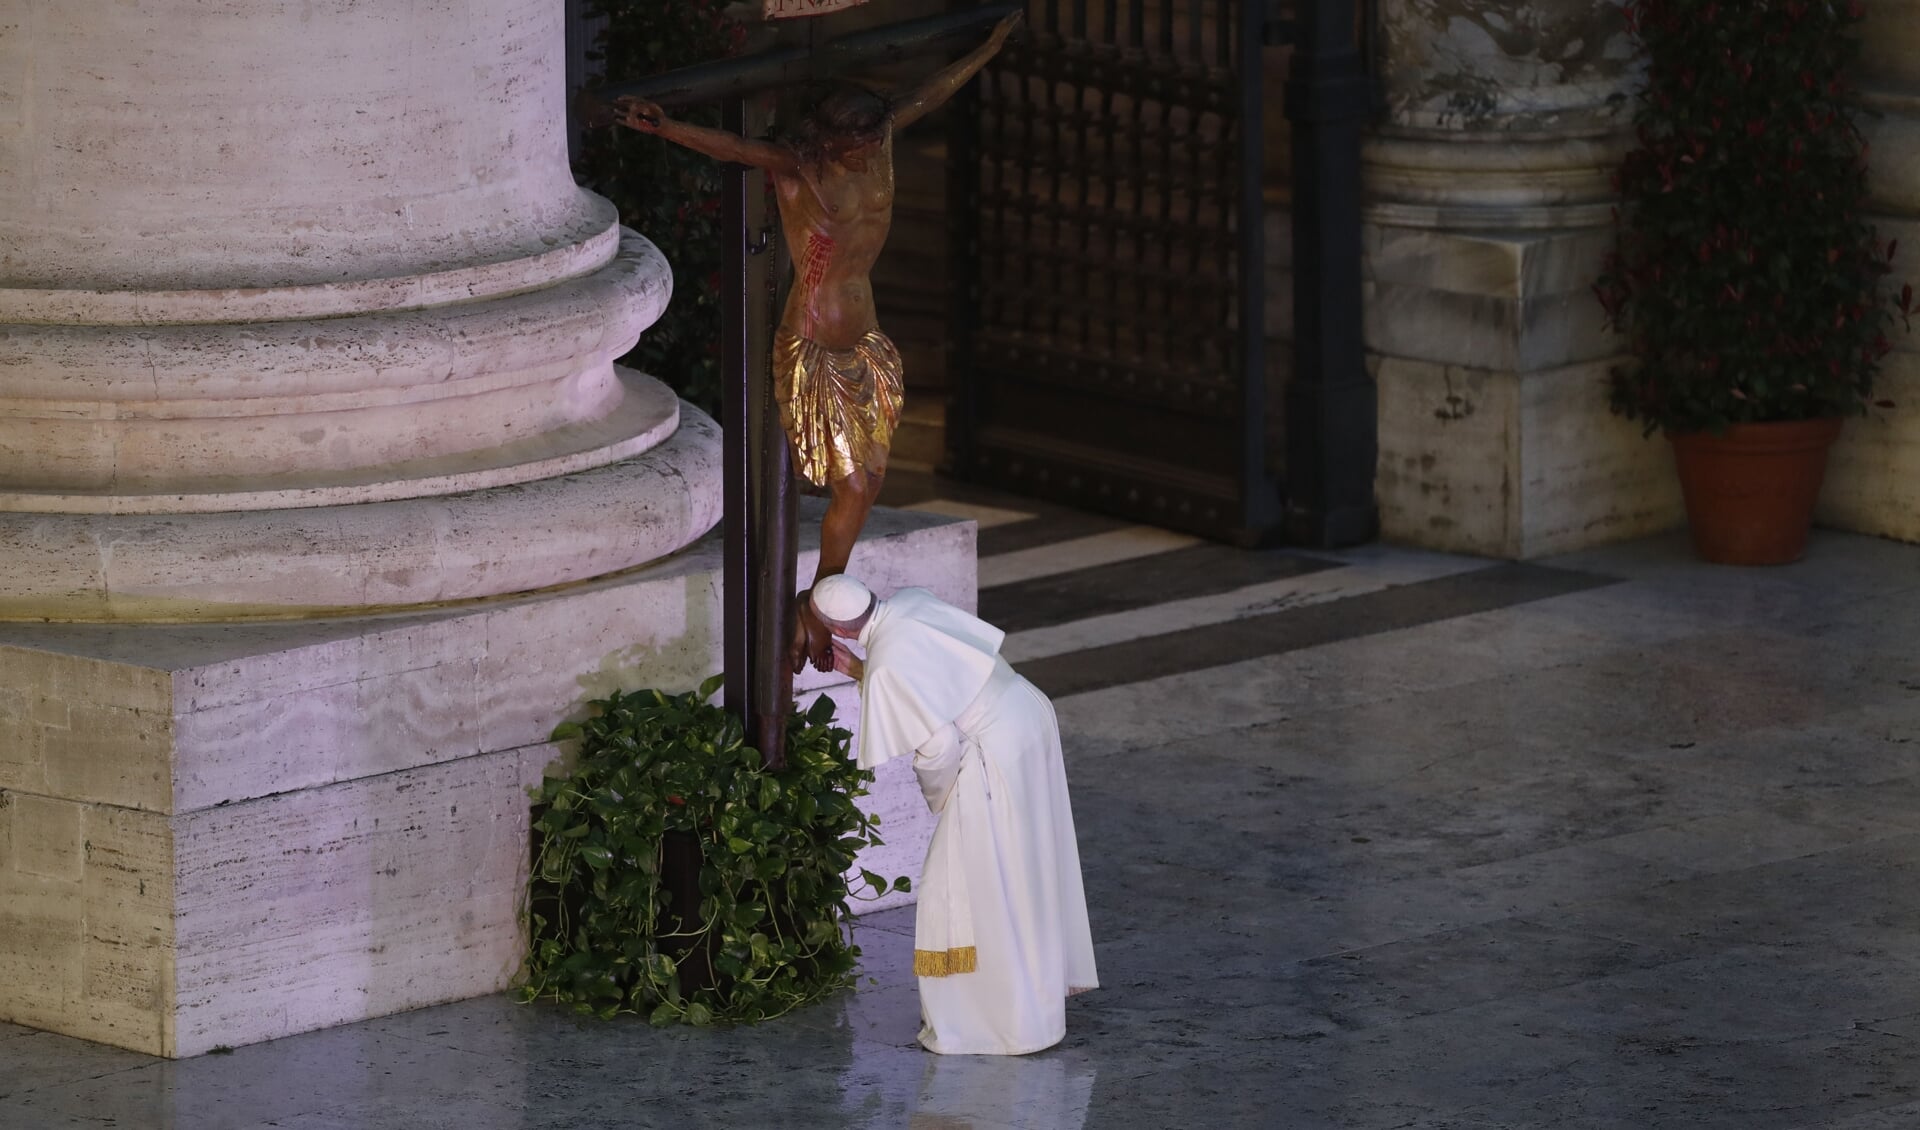 Paus Franciscus groet het kruis dat voor de Sint-Pieter is geplaatst, voorafgaand aan de uitzonderlijke urbi-et-orbizegen op vrijdag 27 maart 2020.